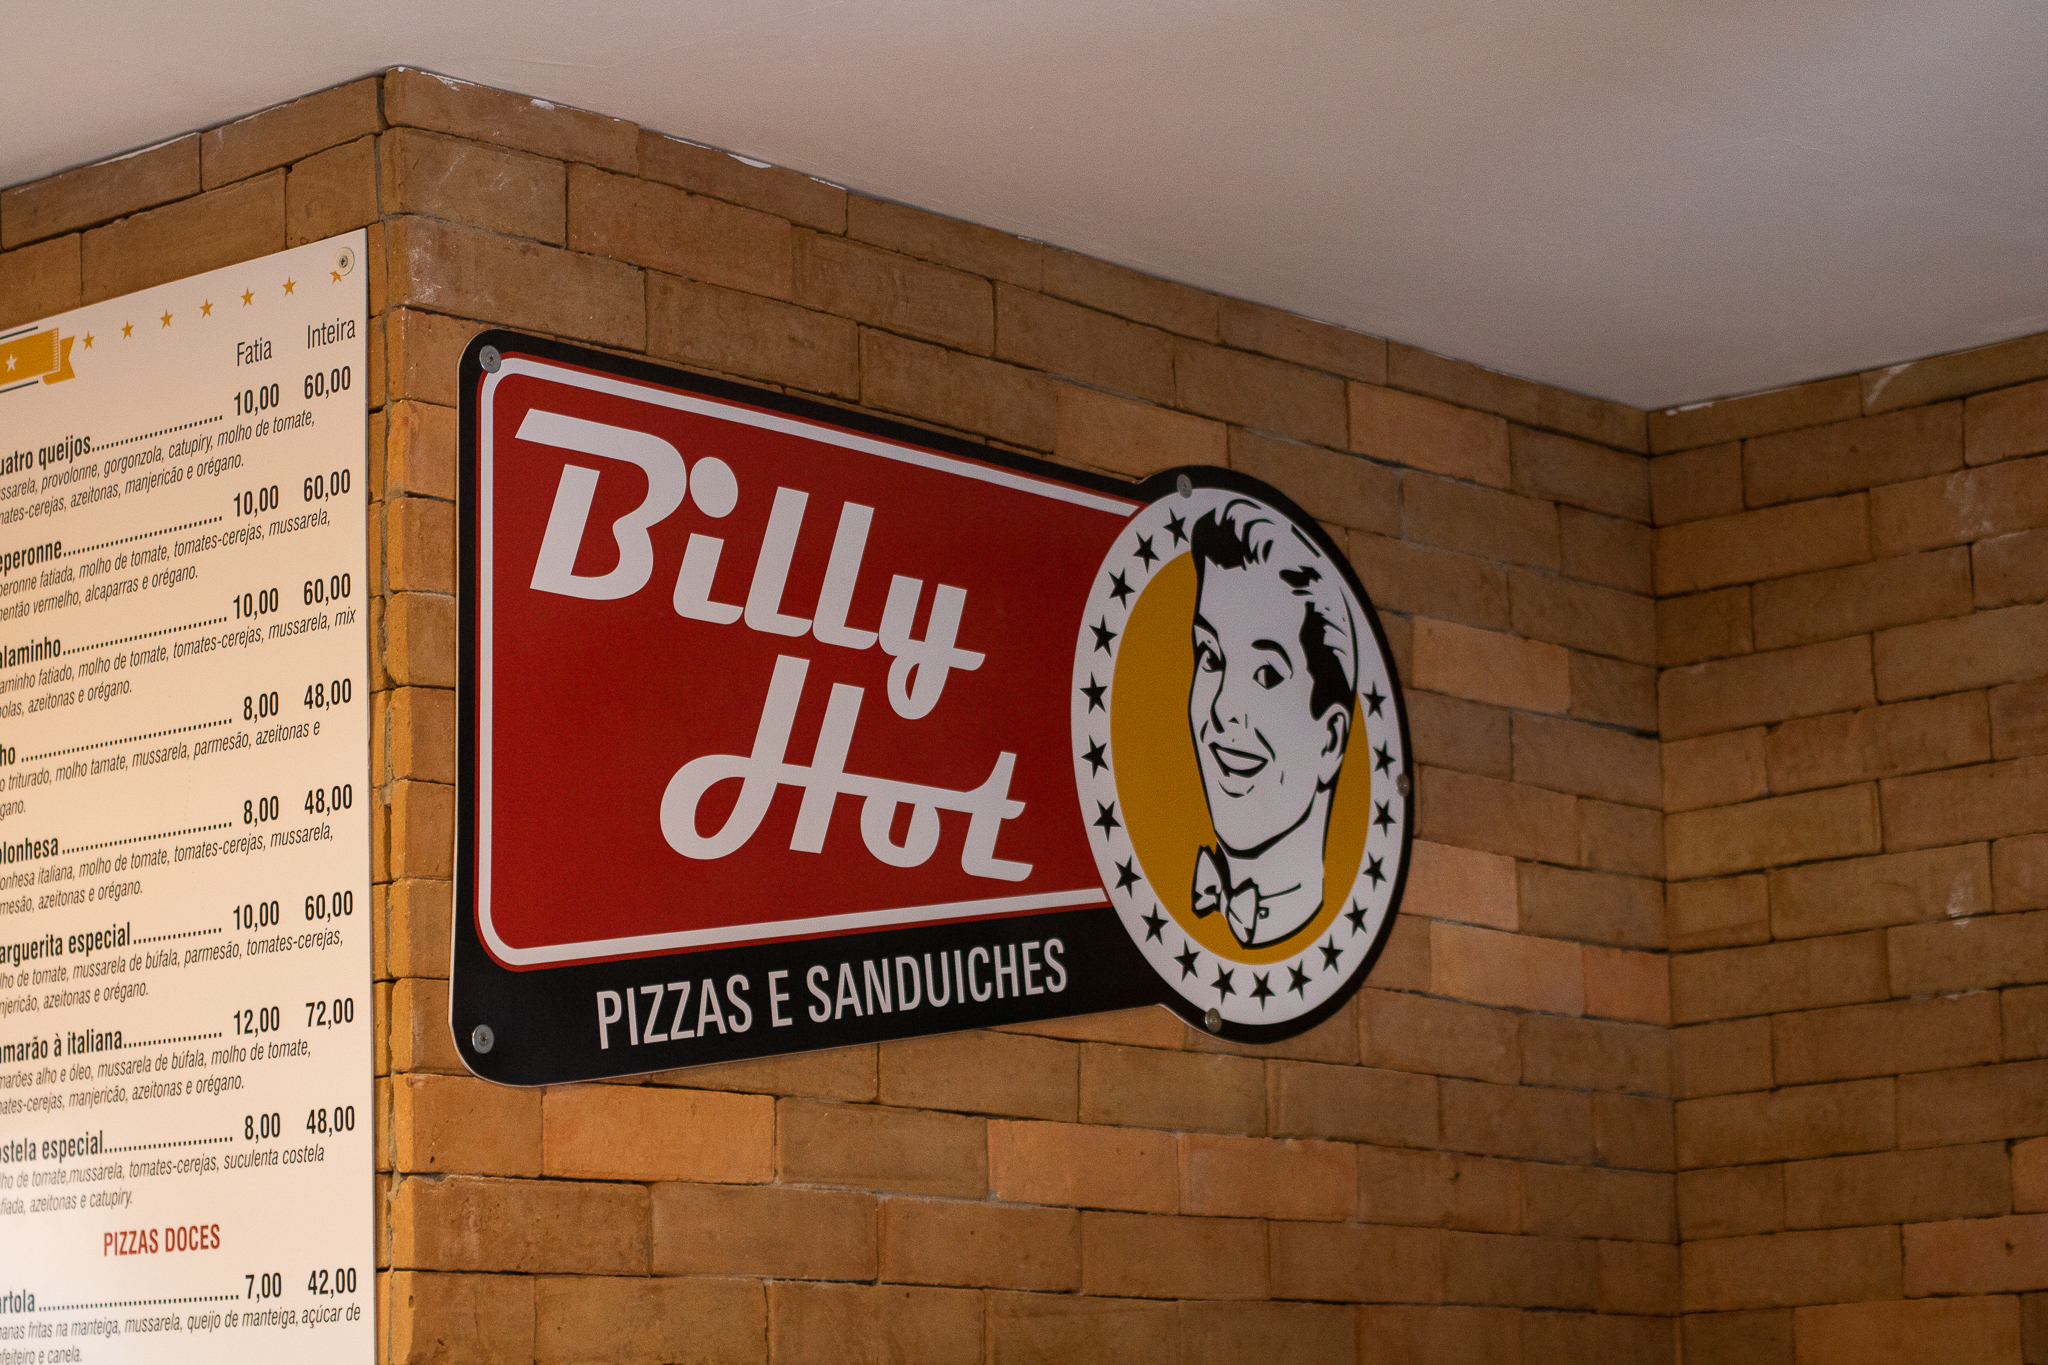 3 Billy Hot – 260121